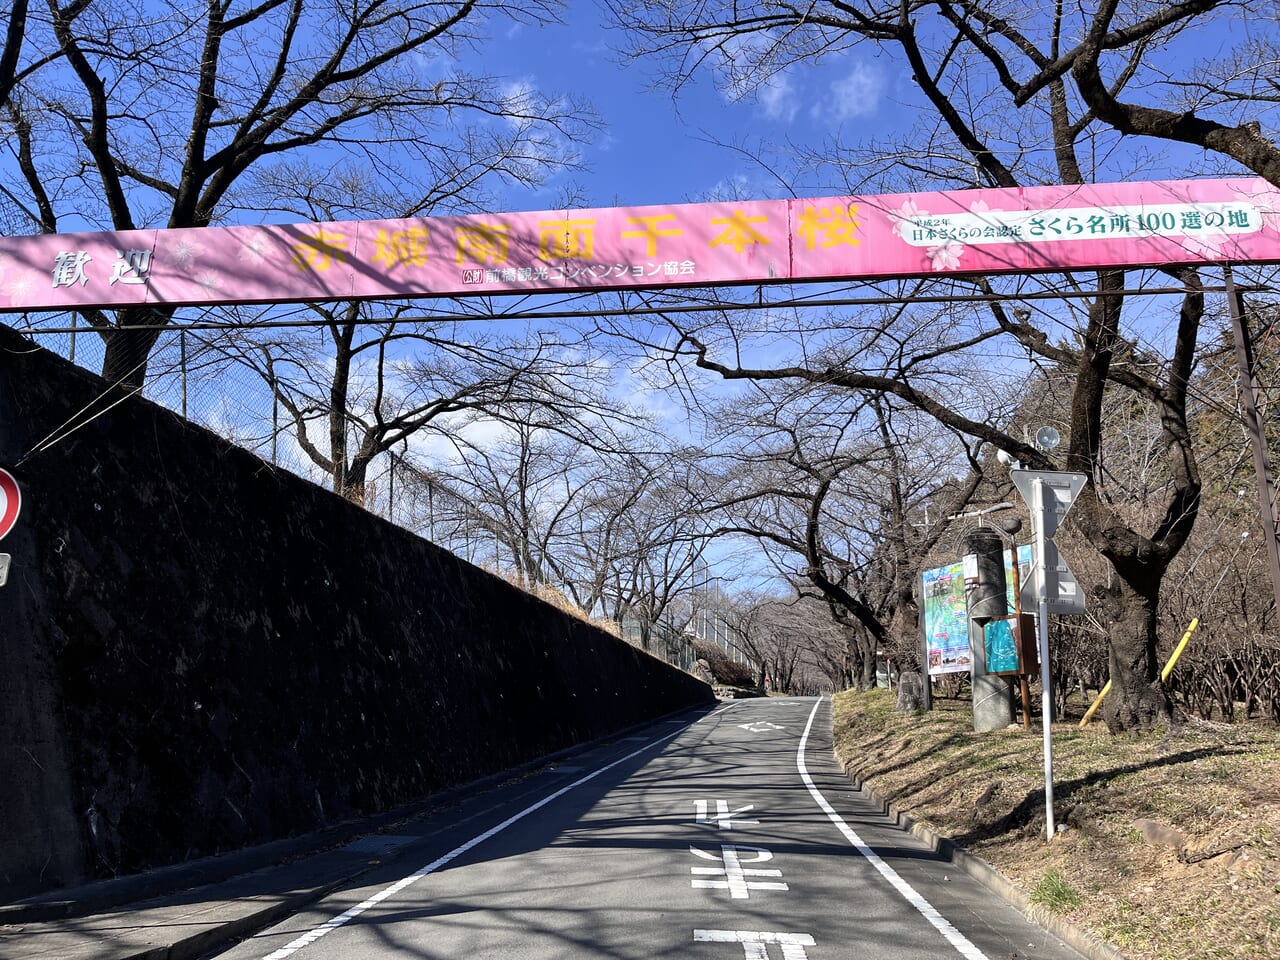 「赤城南面千本桜」の入口の様子